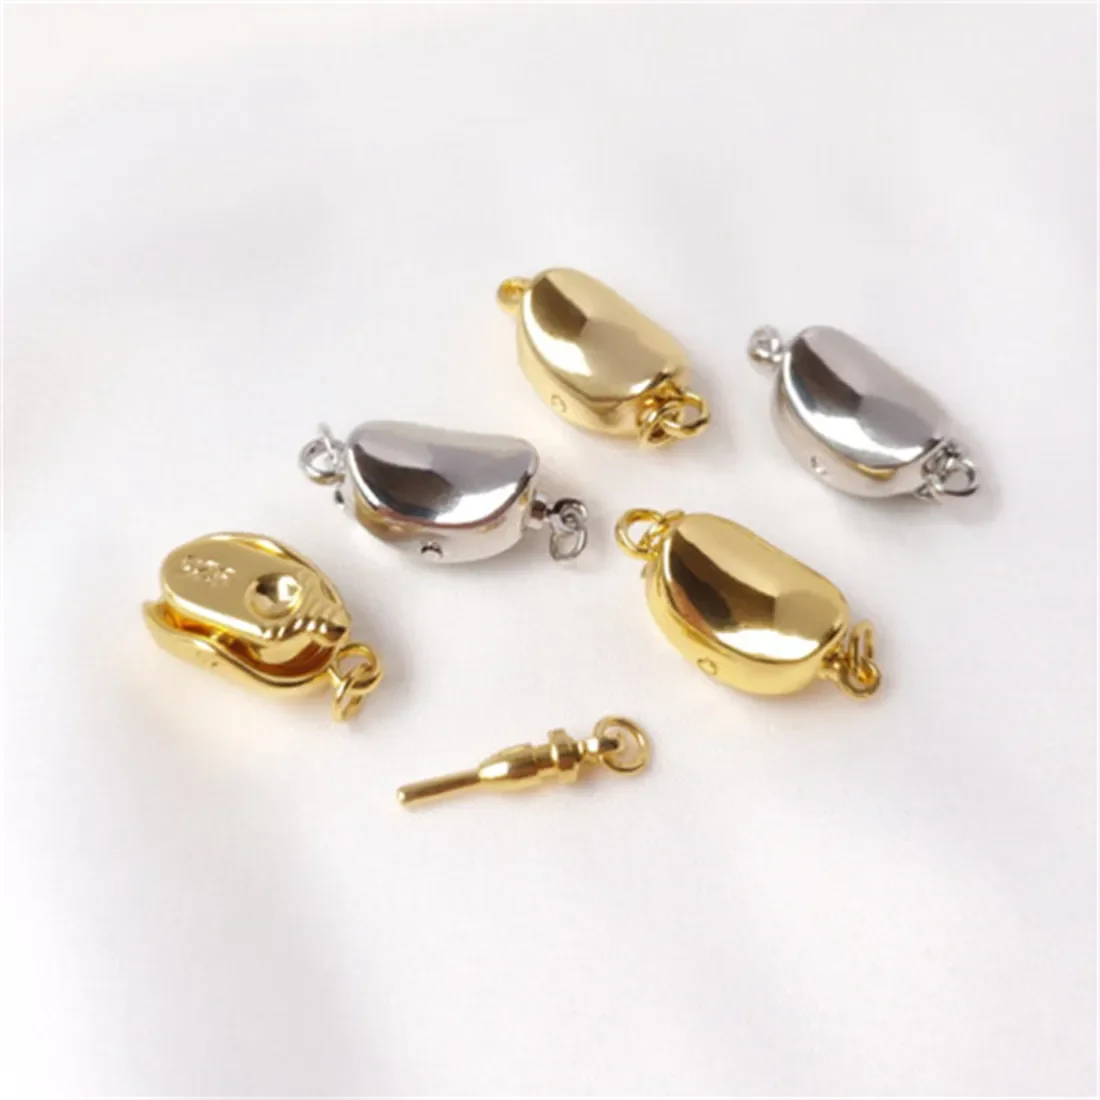 

Жемчужное ожерелье из белого золота 18 карат с застежкой-палочкой, застежкой-липучкой, зажимом, аксессуар «сделай сам» для цепочки до ключиц B926